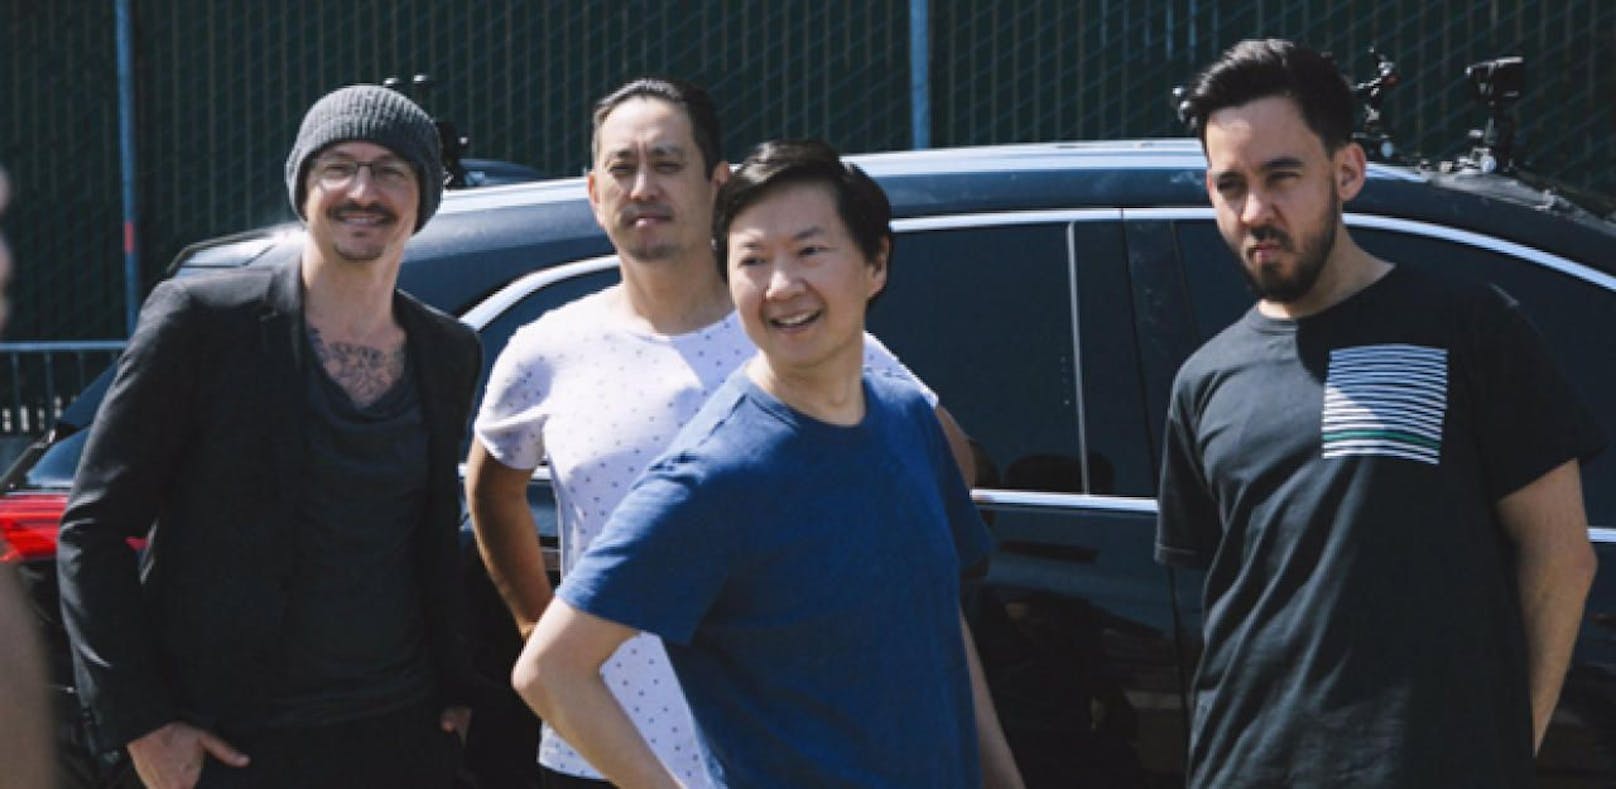 Wird "Carpool Karaoke" mit Linkin Park gezeigt?